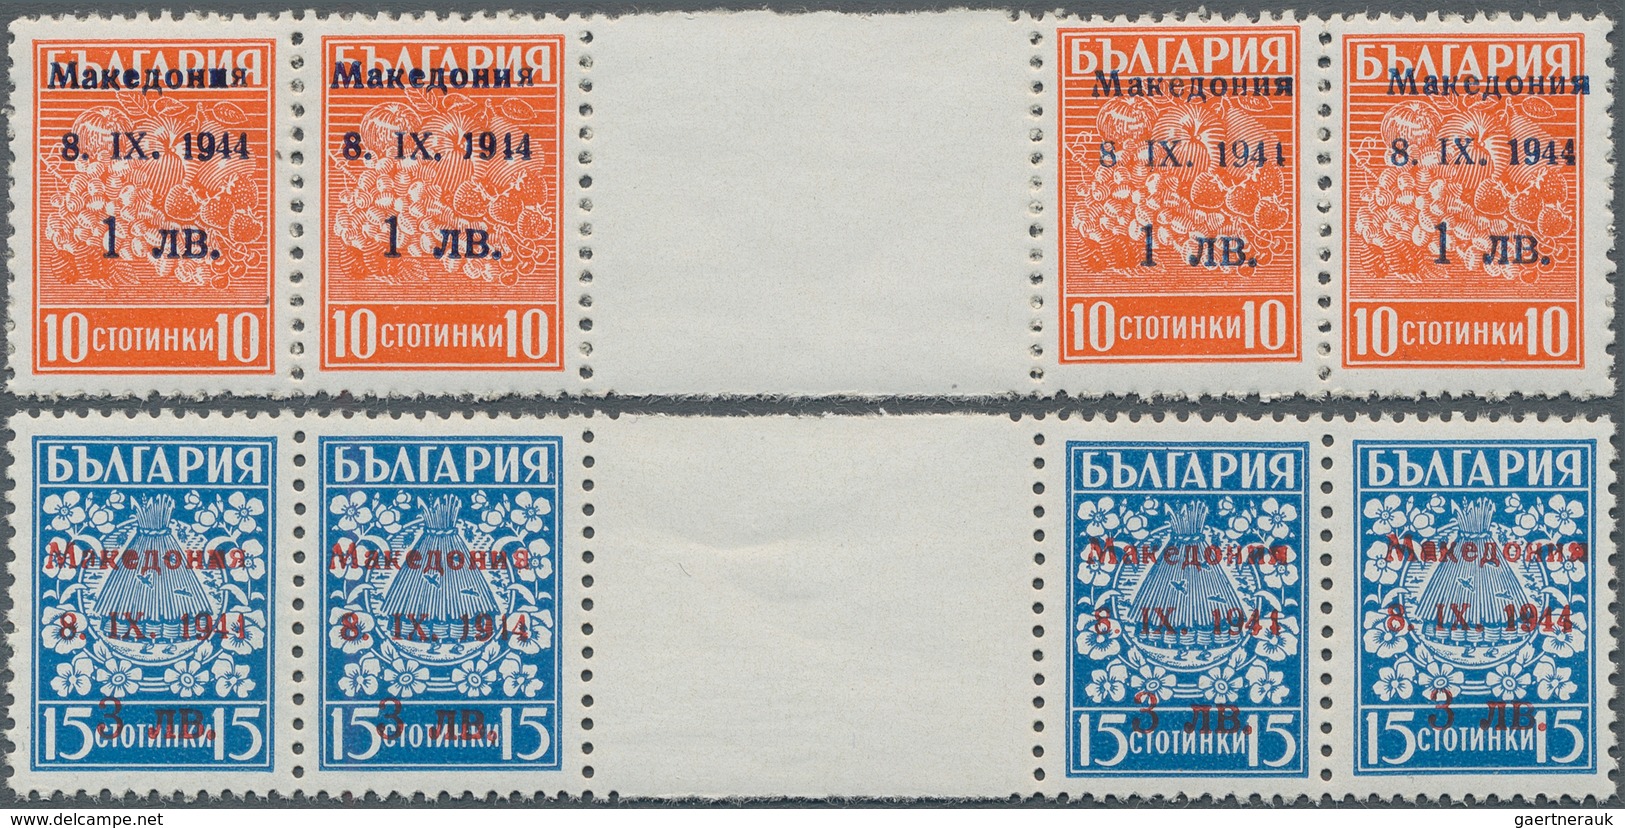 Dt. Besetzung II WK - Mazedonien: 1944, 1 L. Auf 10 St. Orange Und 3 L. Auf 15 St. Blue, Zwei Werte - Occupation 1938-45